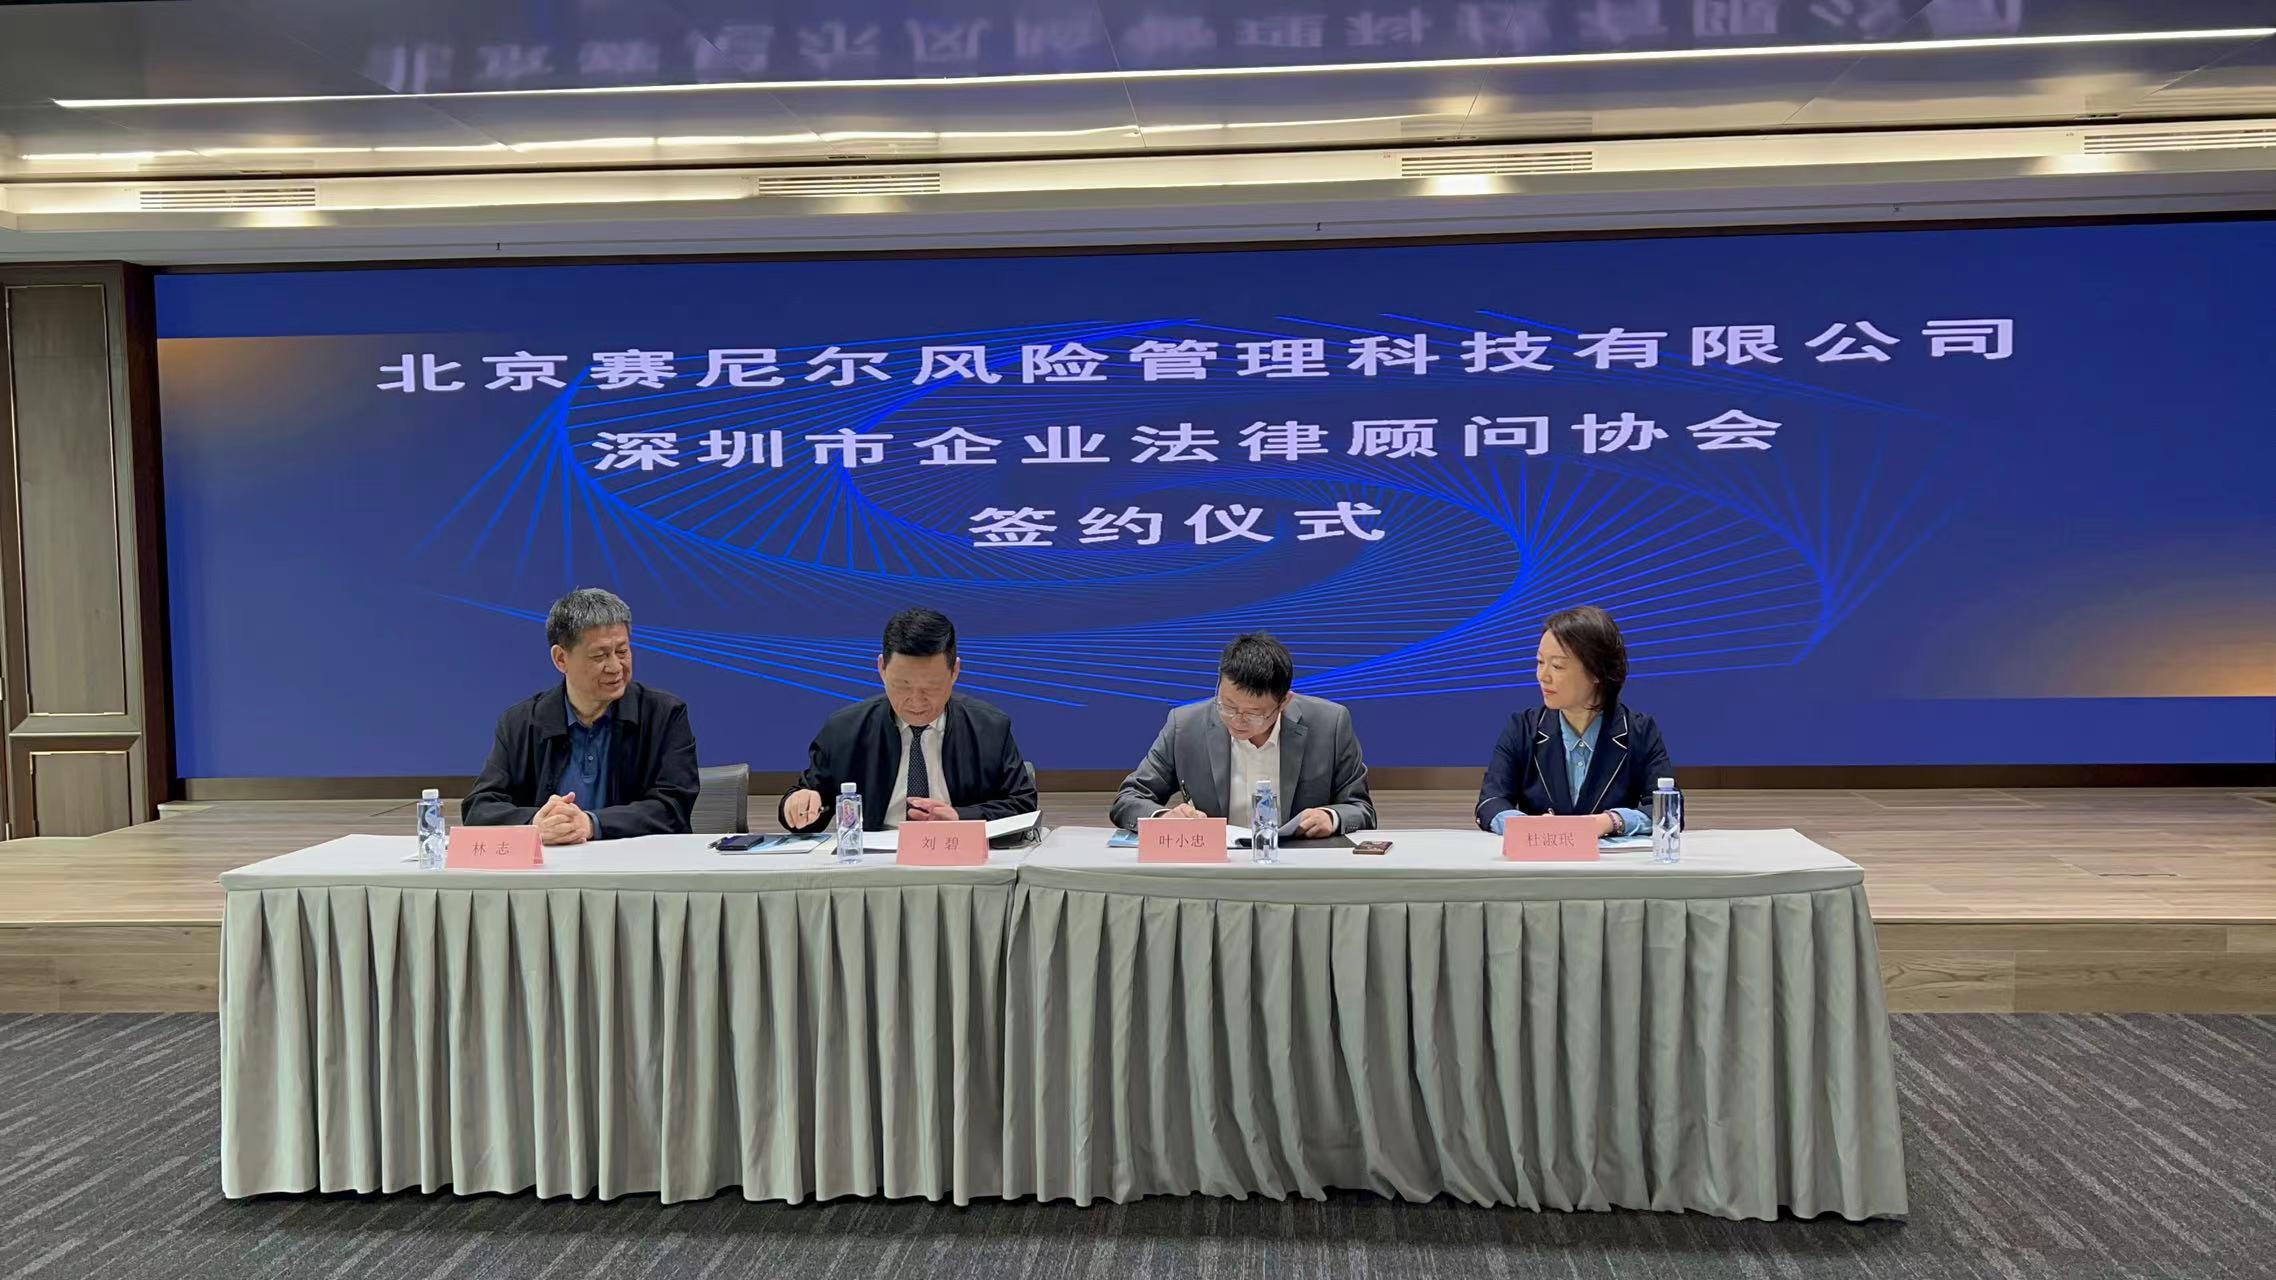 深圳市企业法律顾问协会与北京赛尼尔风险管理科技有限公司签署战略合作协议